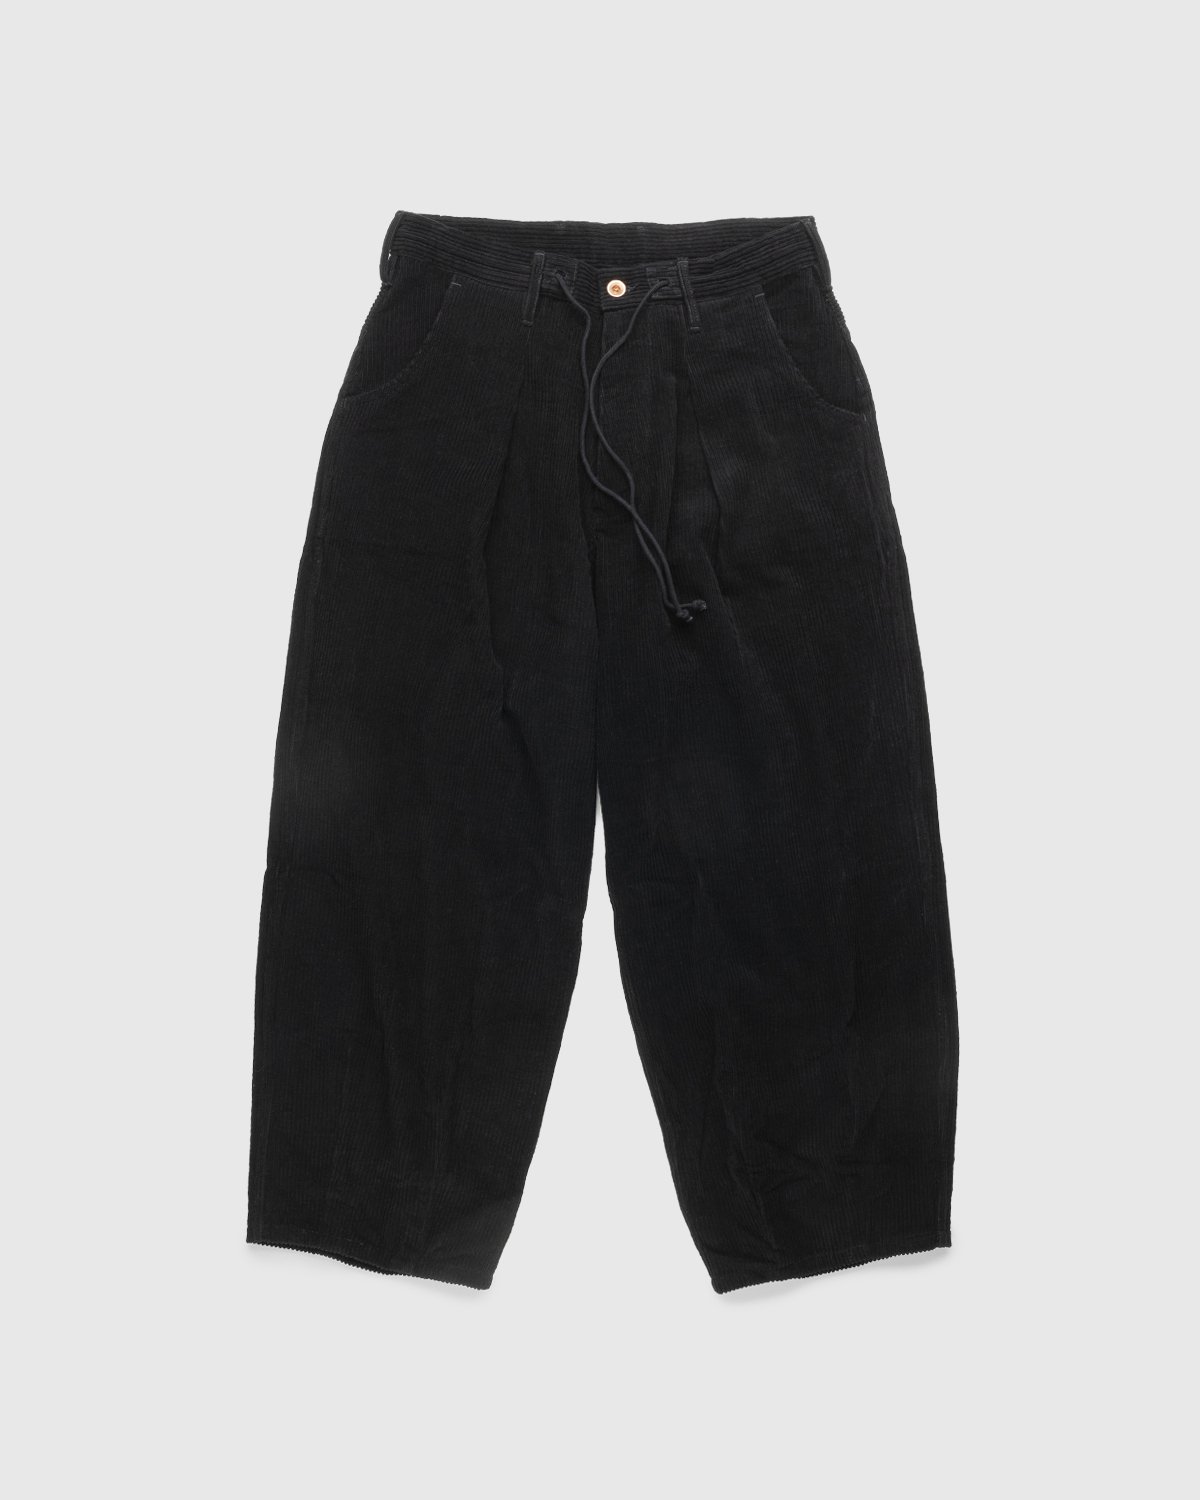 Story mfg. - Corduroy Lush Pants Iron - Clothing - Black - Image 1